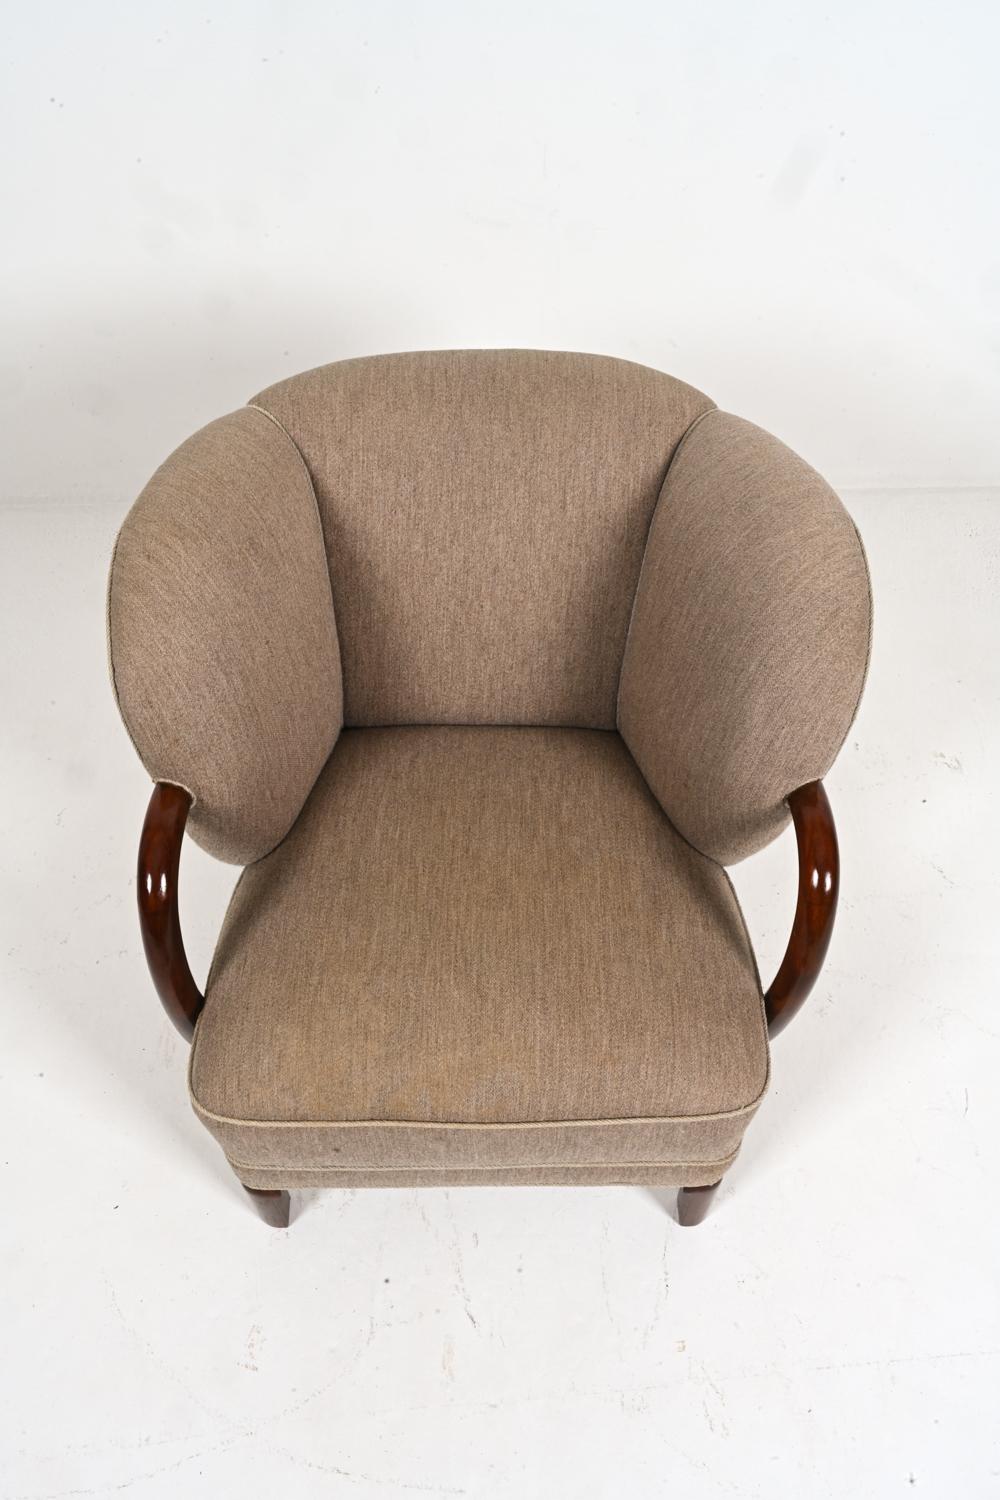 Danish Rare Model 107 Chair by Viggo Boesen for Slagelse Mobelvaerk, Denmark, c. 1940's For Sale